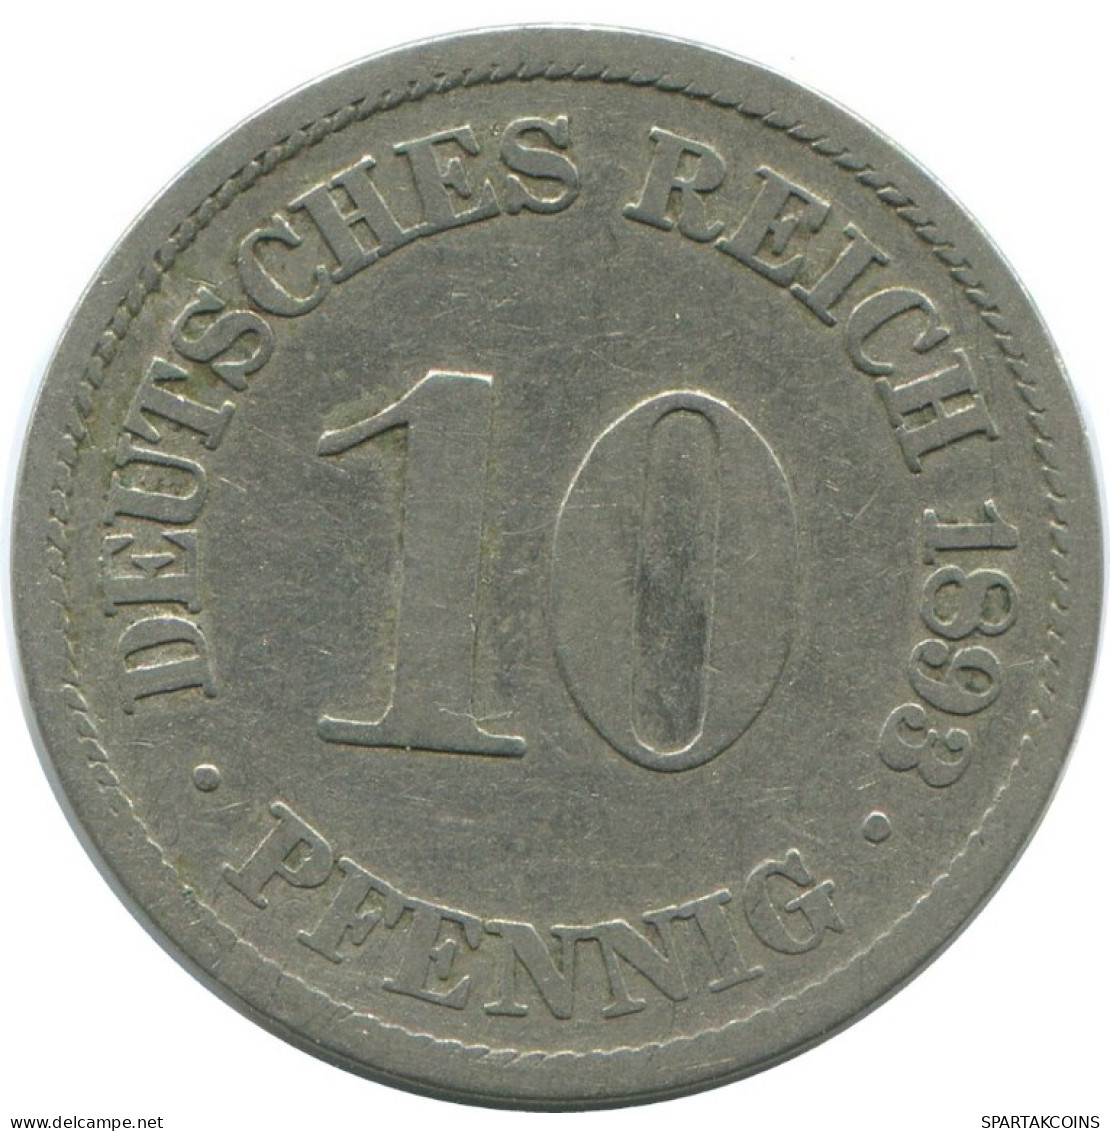 10 PFENNIG 1893 A GERMANY Coin #AE474.U.A - 10 Pfennig